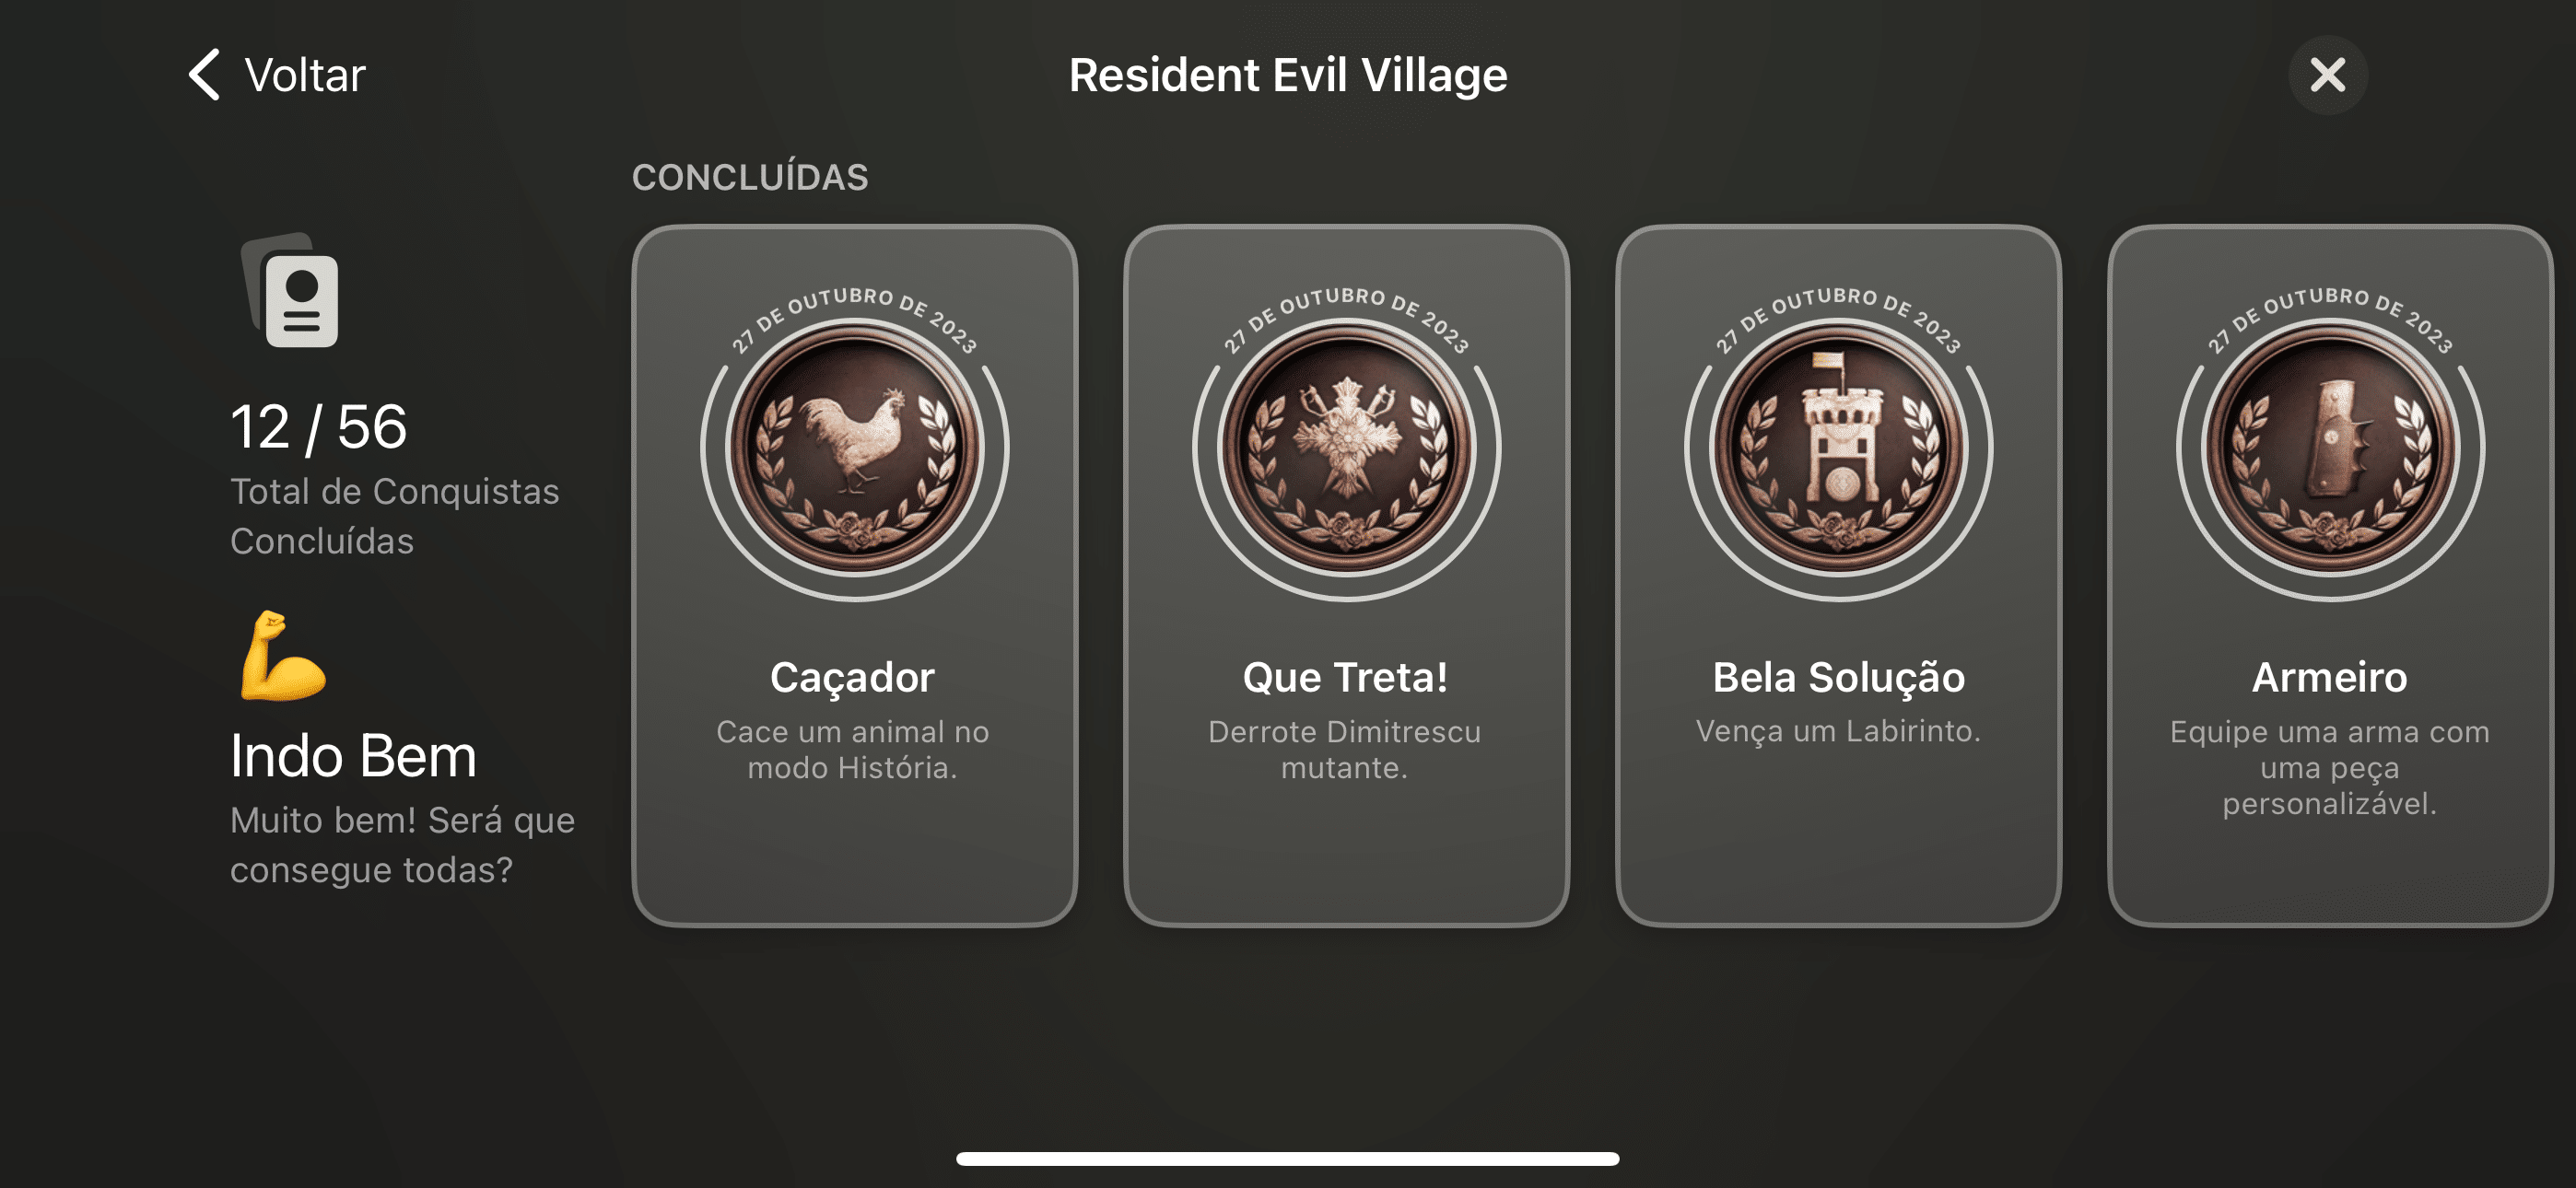 Resident Evil Village para iPhones e iPads será lançado em 30/10